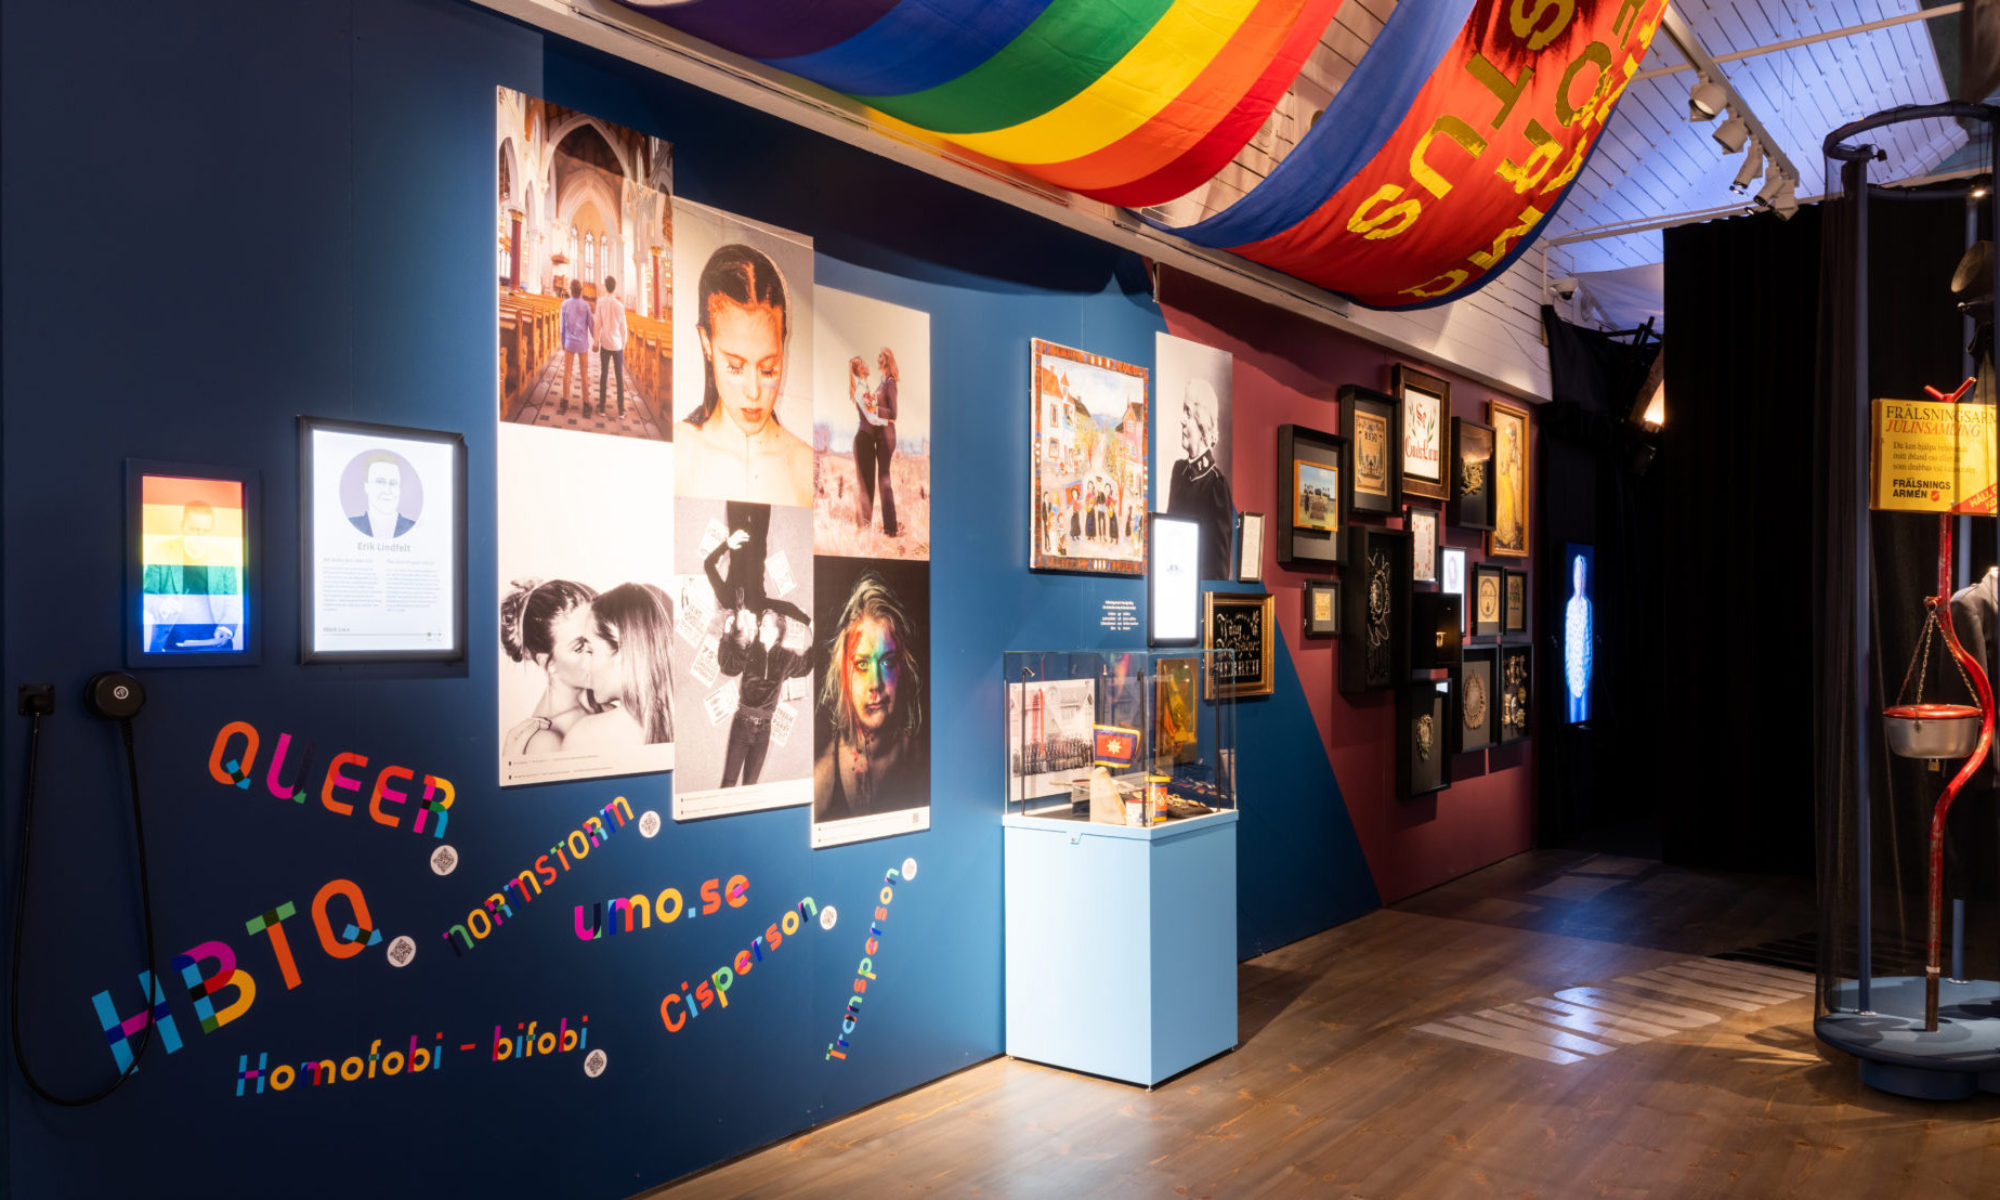 Foton och föremål syns på en blåmålad vägg, där också ord som rör HBTQ-frågor är uppsatta. I taket syns bland annat en regnbågsflagga.